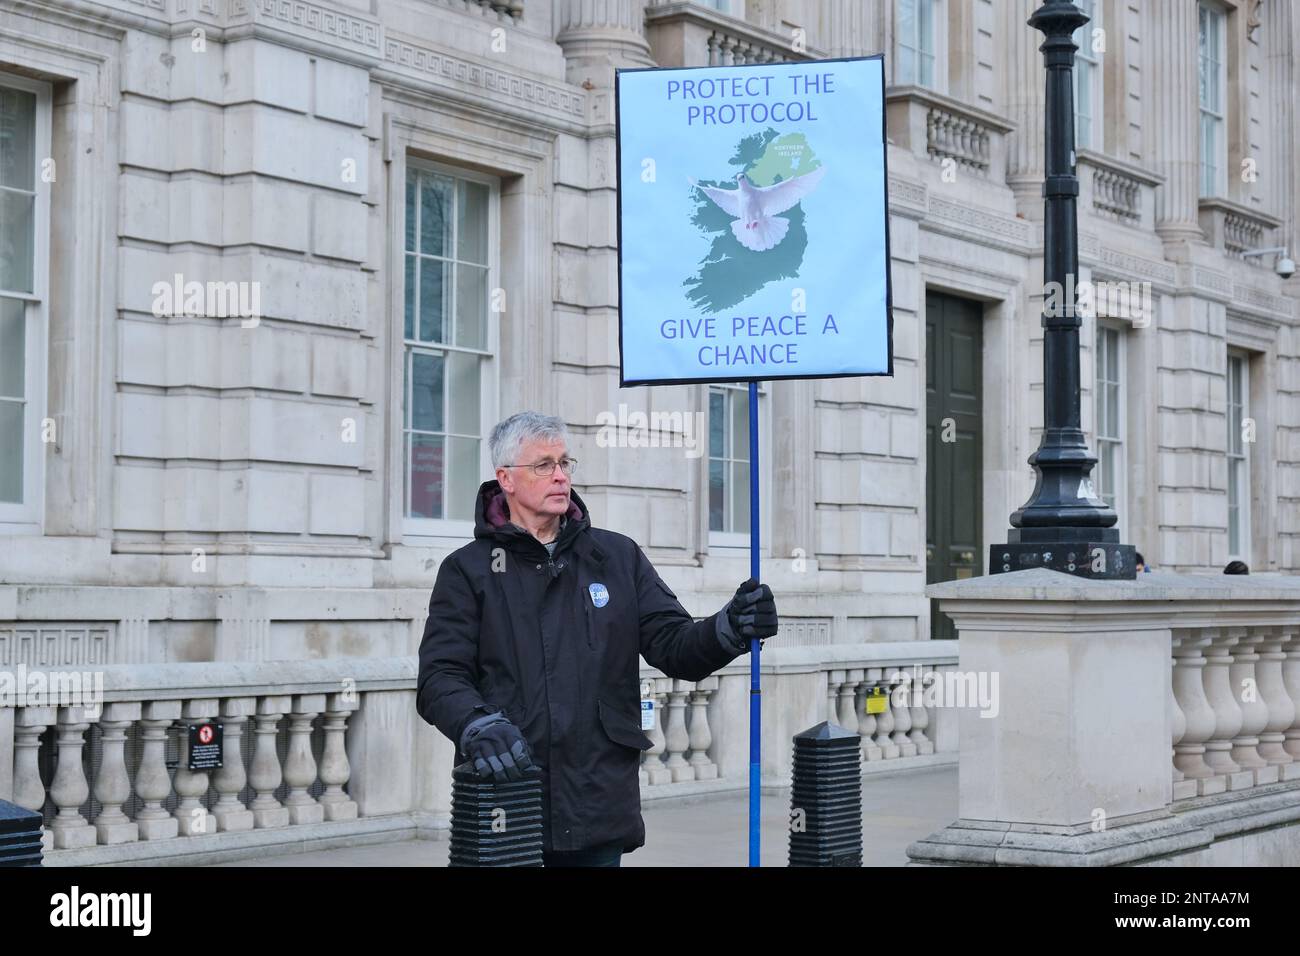 Londra, Regno Unito. I manifestanti della SODEM anti-Brexit si trovano a Whitehall il giorno in cui il governo e l’UE hanno firmato un accordo sul protocollo sull’Irlanda del Nord. Foto Stock